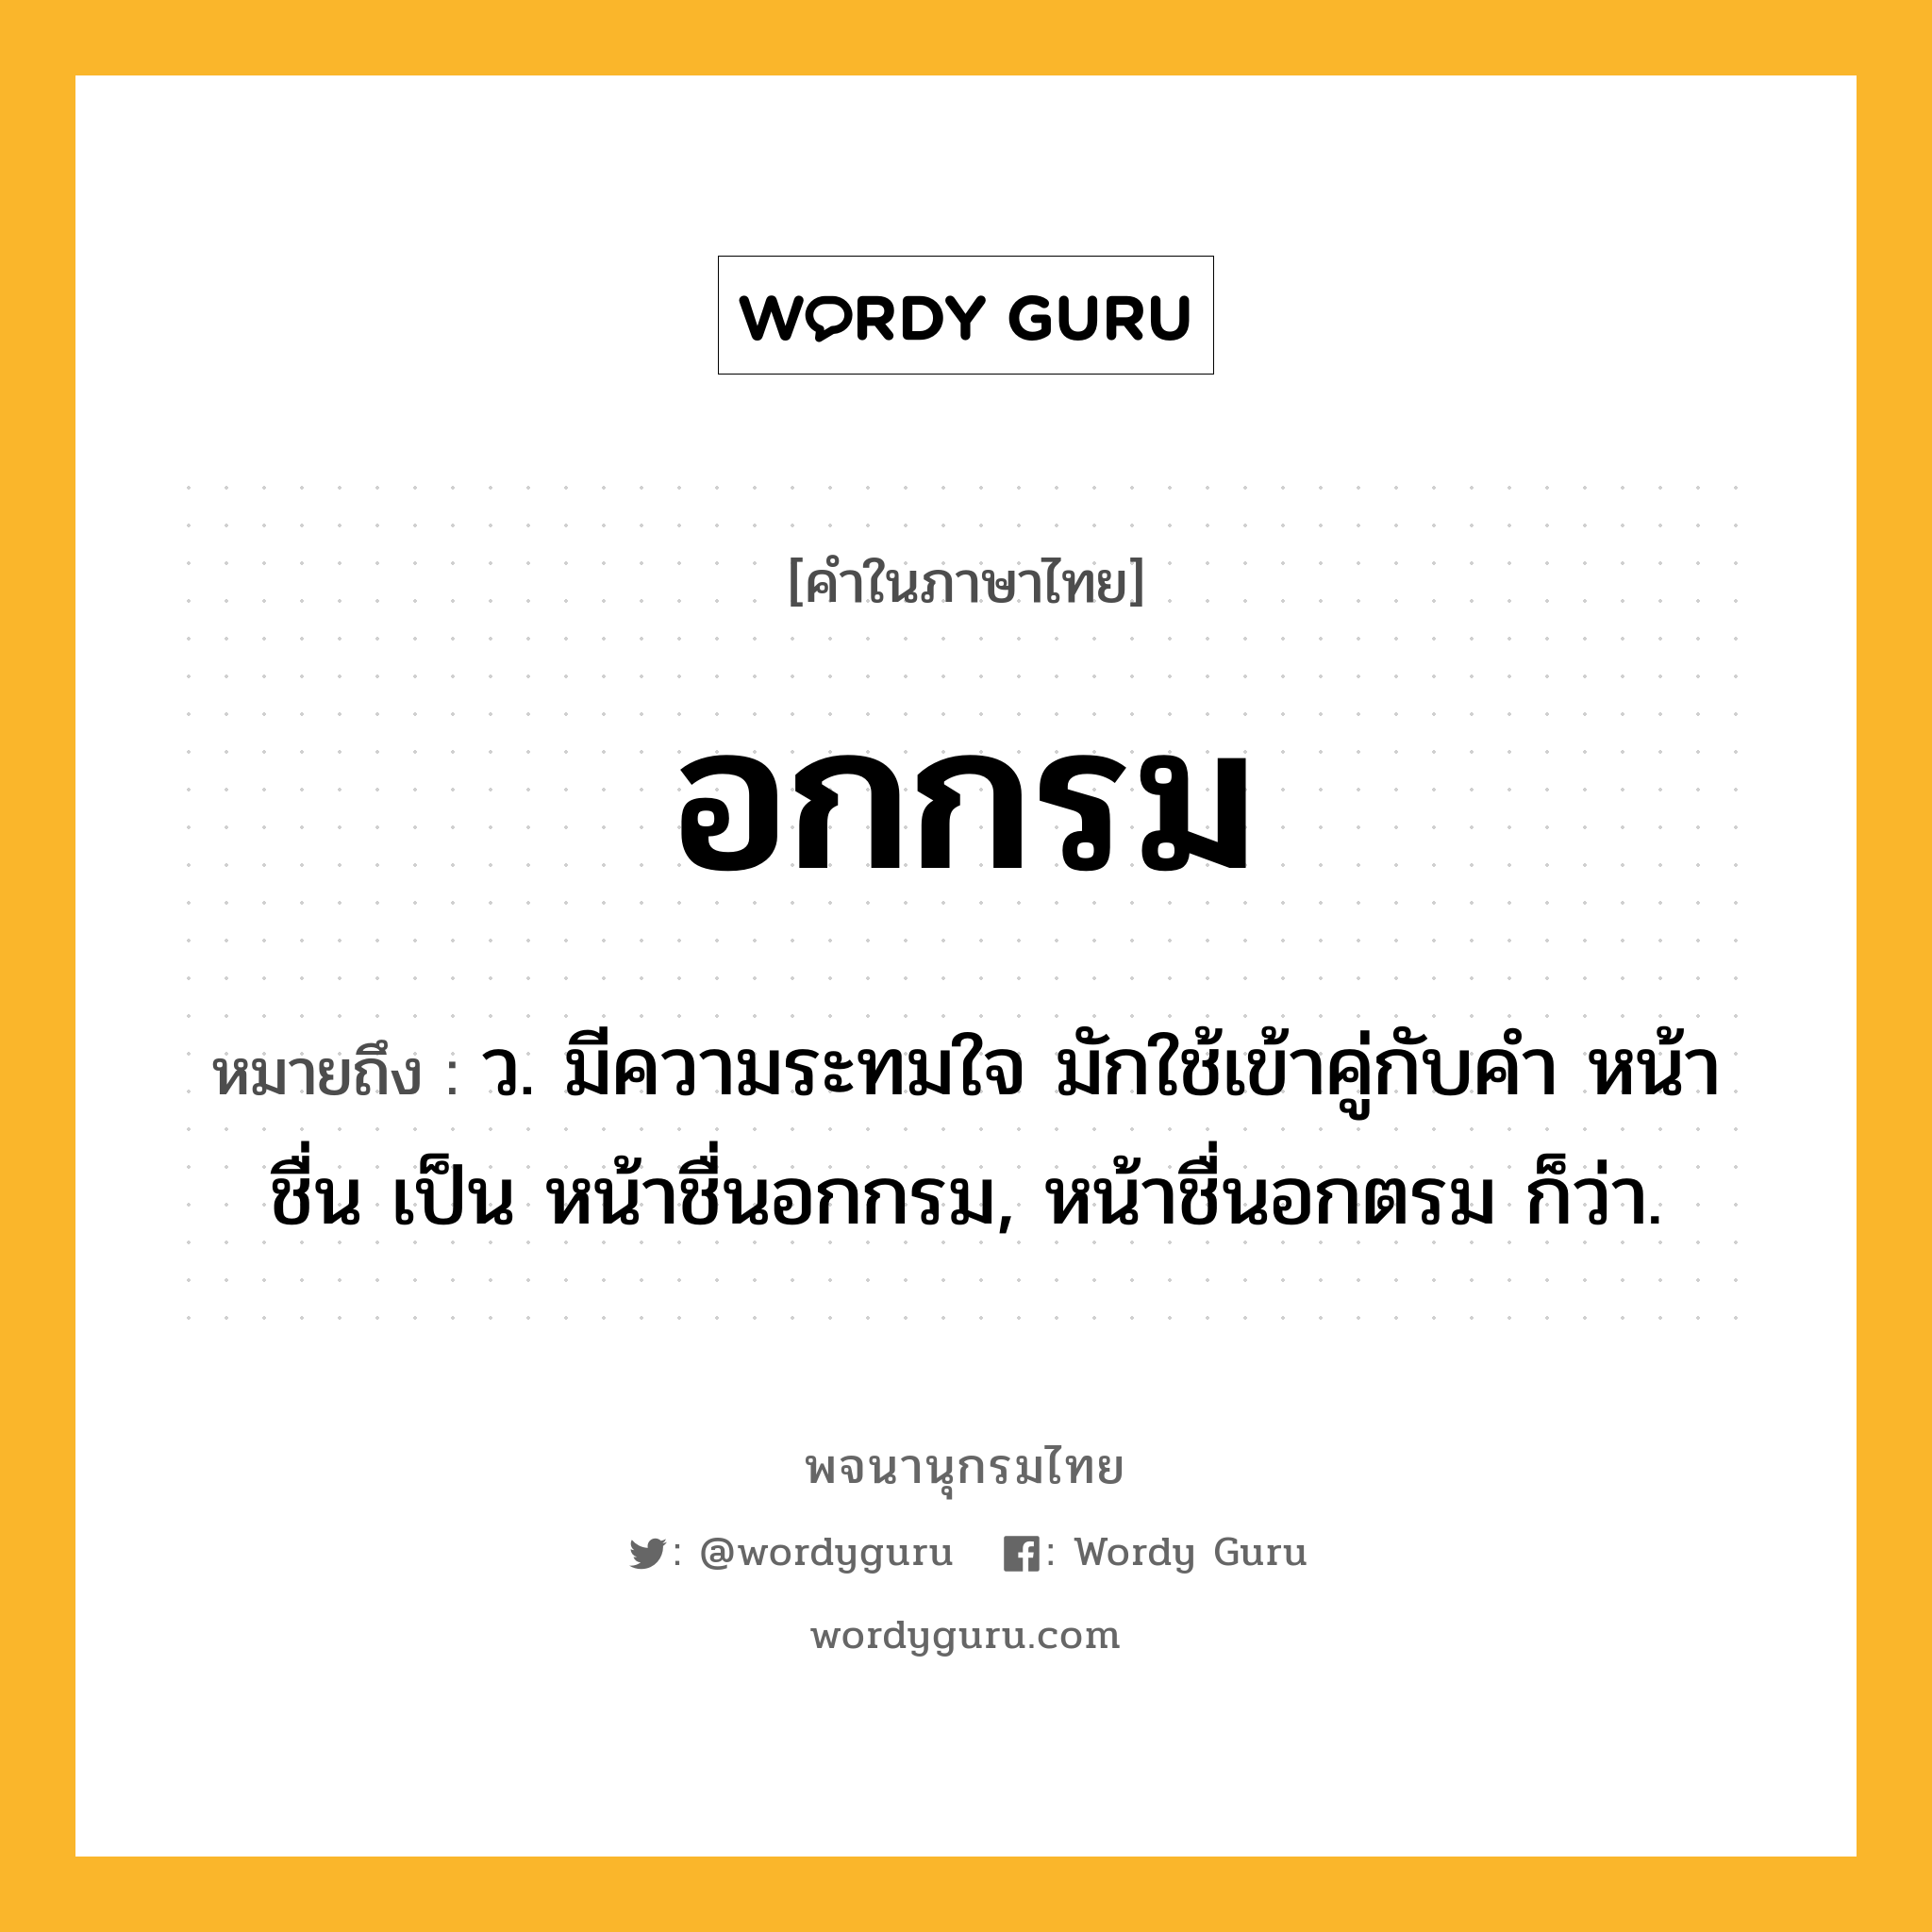 อกกรม ความหมาย หมายถึงอะไร?, คำในภาษาไทย อกกรม หมายถึง ว. มีความระทมใจ มักใช้เข้าคู่กับคำ หน้าชื่น เป็น หน้าชื่นอกกรม, หน้าชื่นอกตรม ก็ว่า.